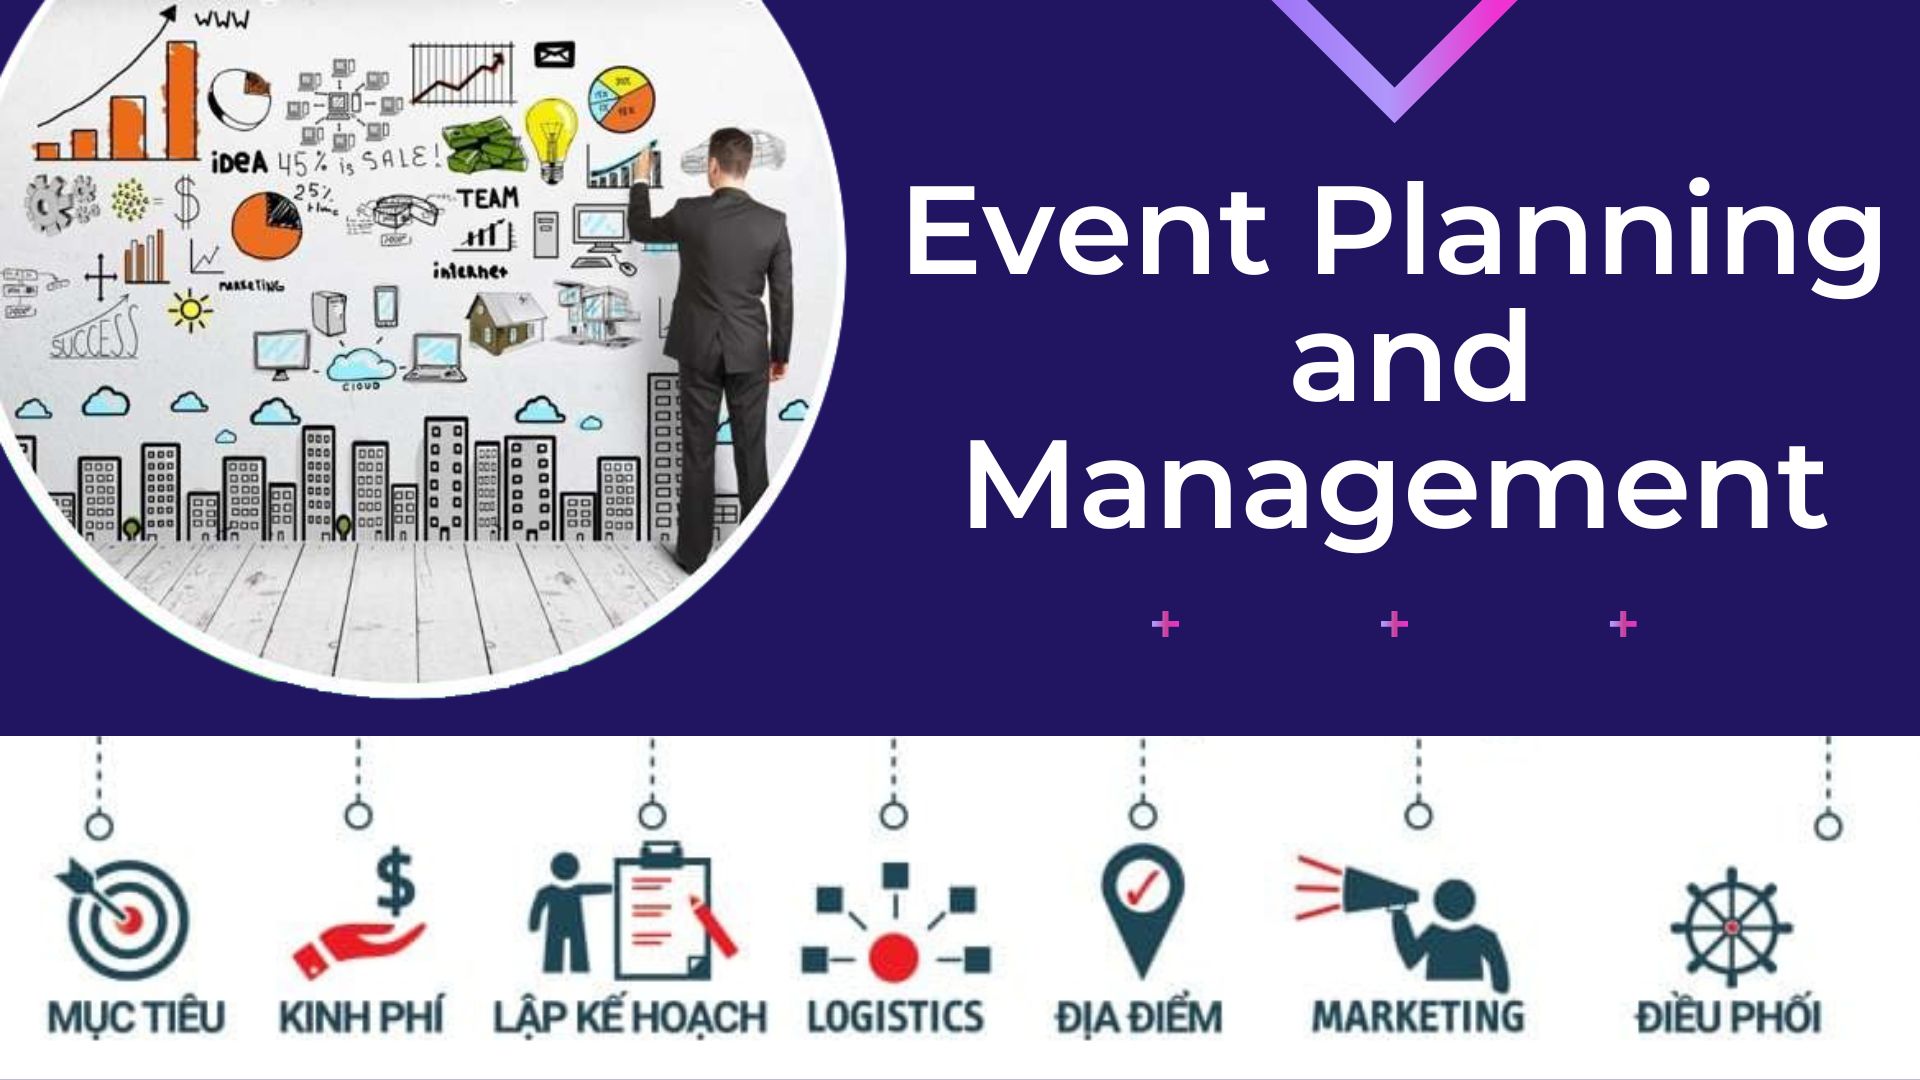 Event Planning and Management  - Quản lý và lập kế hoạch sự kiện